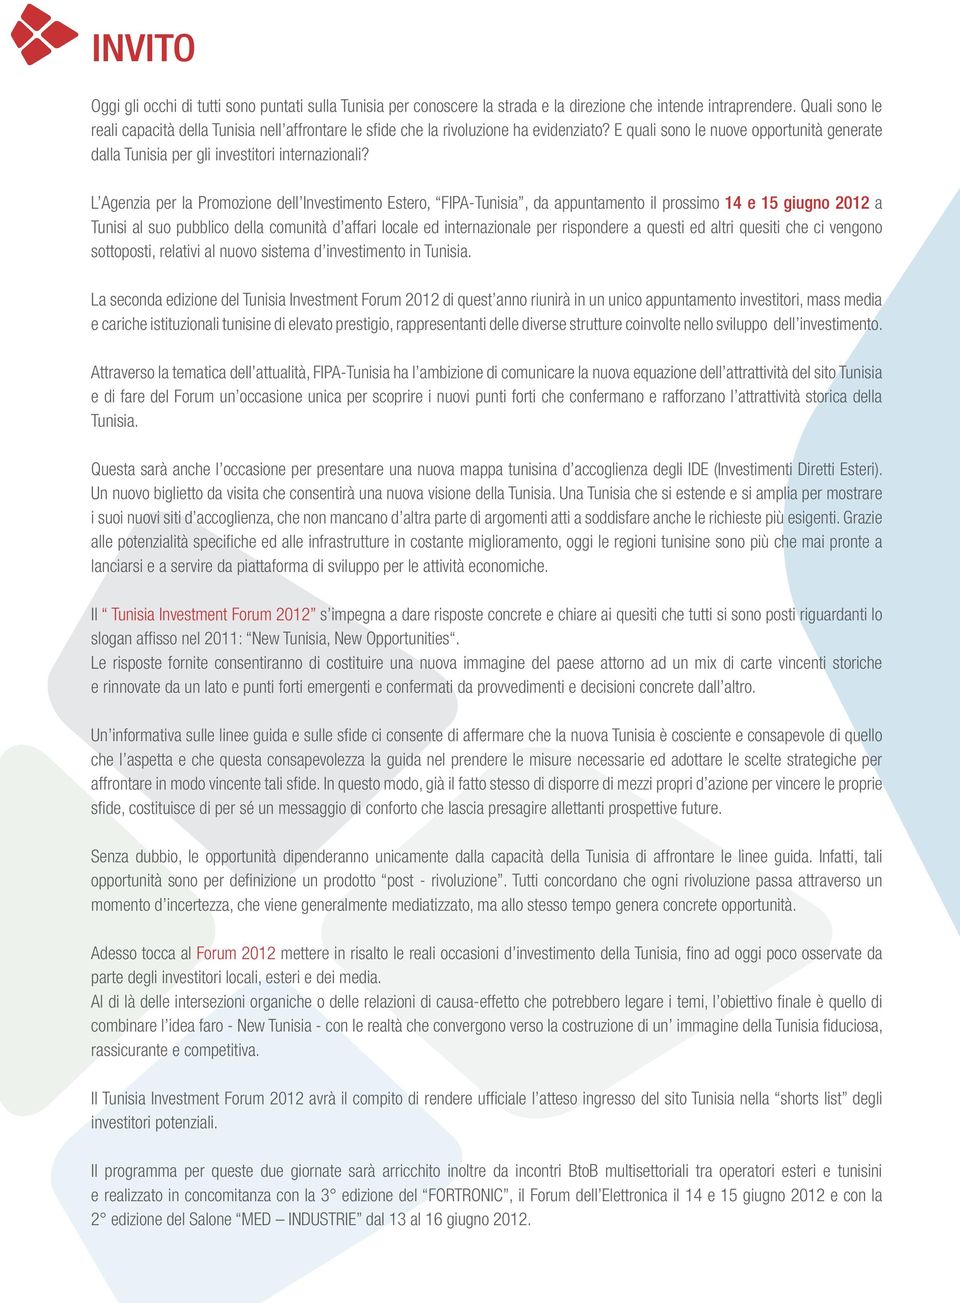 L Agenzia per la Promozione dell Investimento Estero, FIPA-Tunisia, da appuntamento il prossimo 14 e 15 giugno 2012 a Tunisi al suo pubblico della comunità d affari locale ed internazionale per